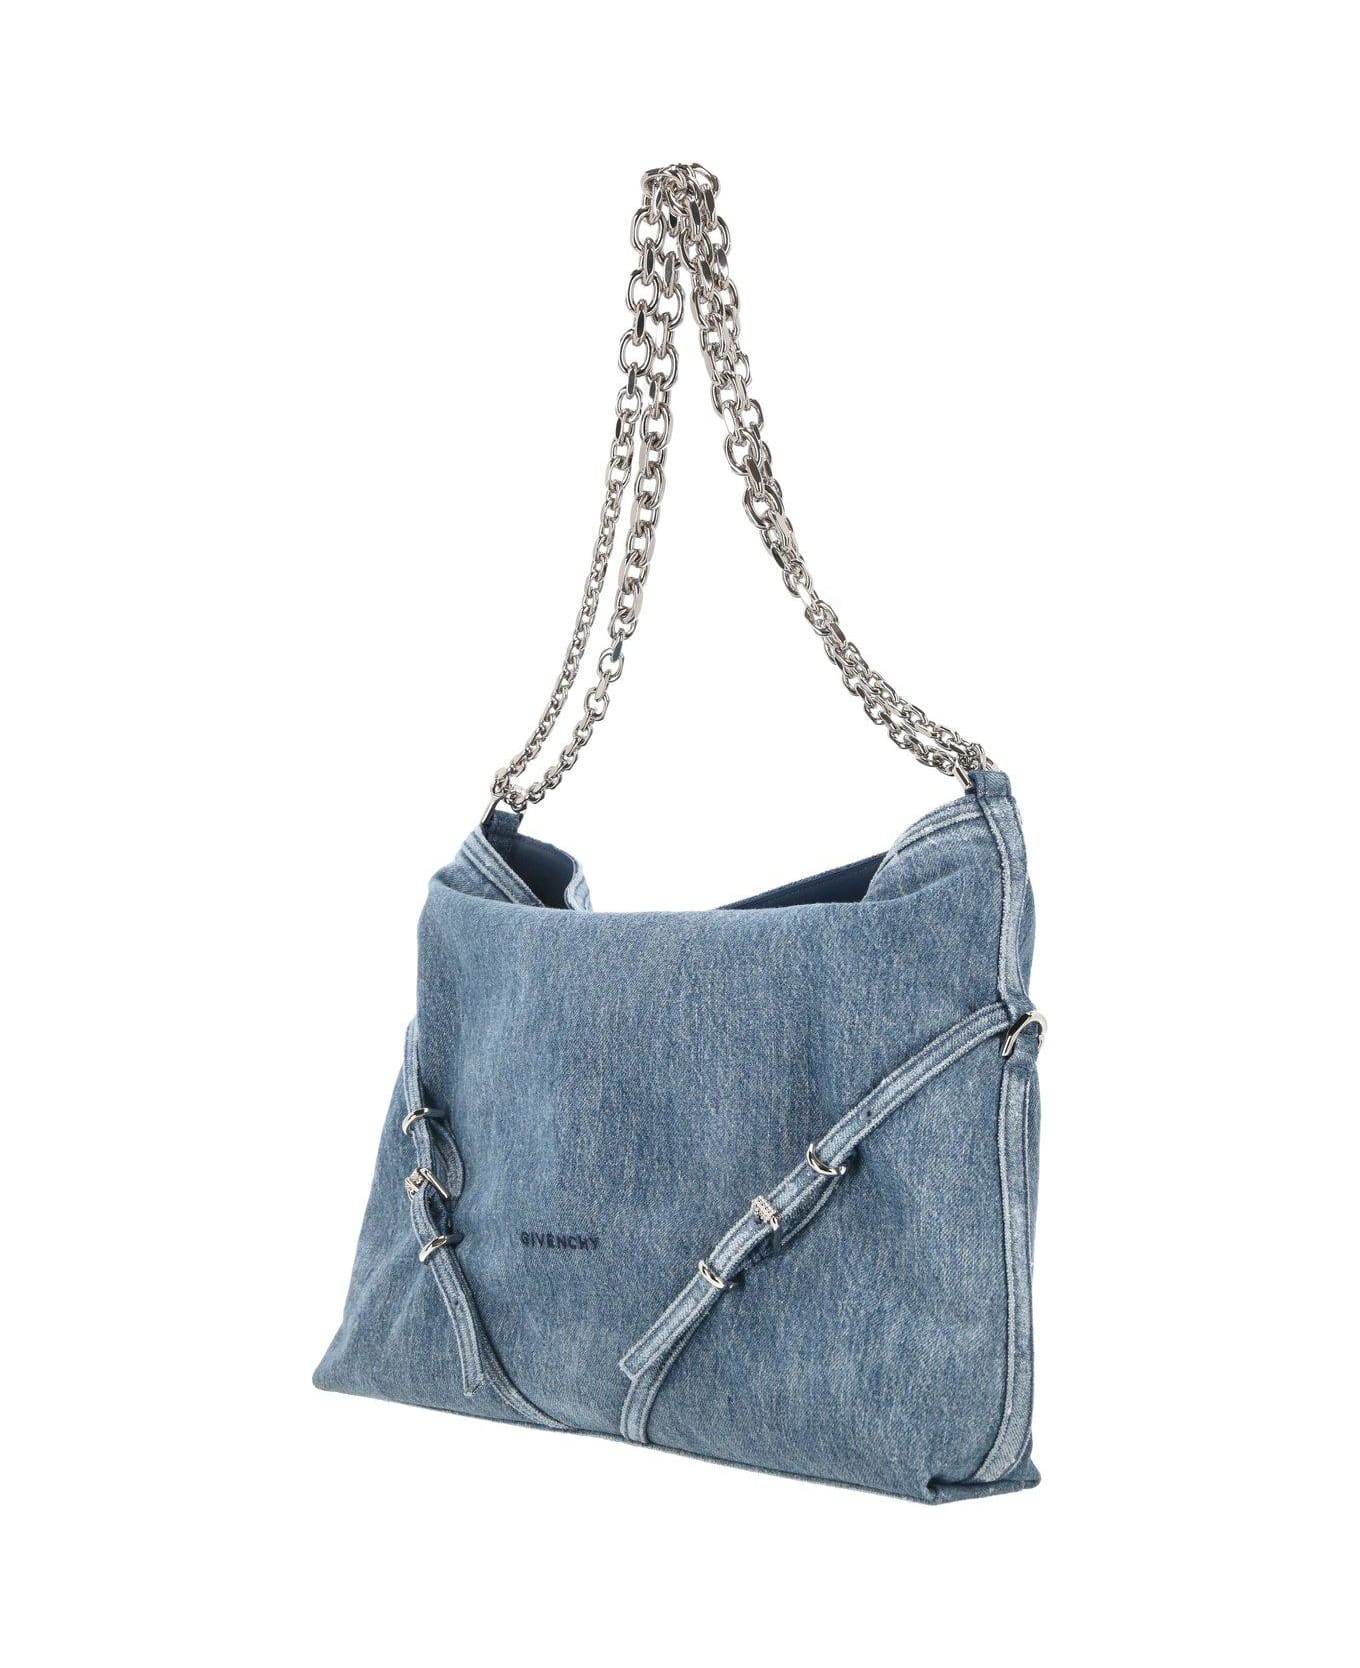 Givenchy Medium Voyou Shoulder Bag - Clear Blue